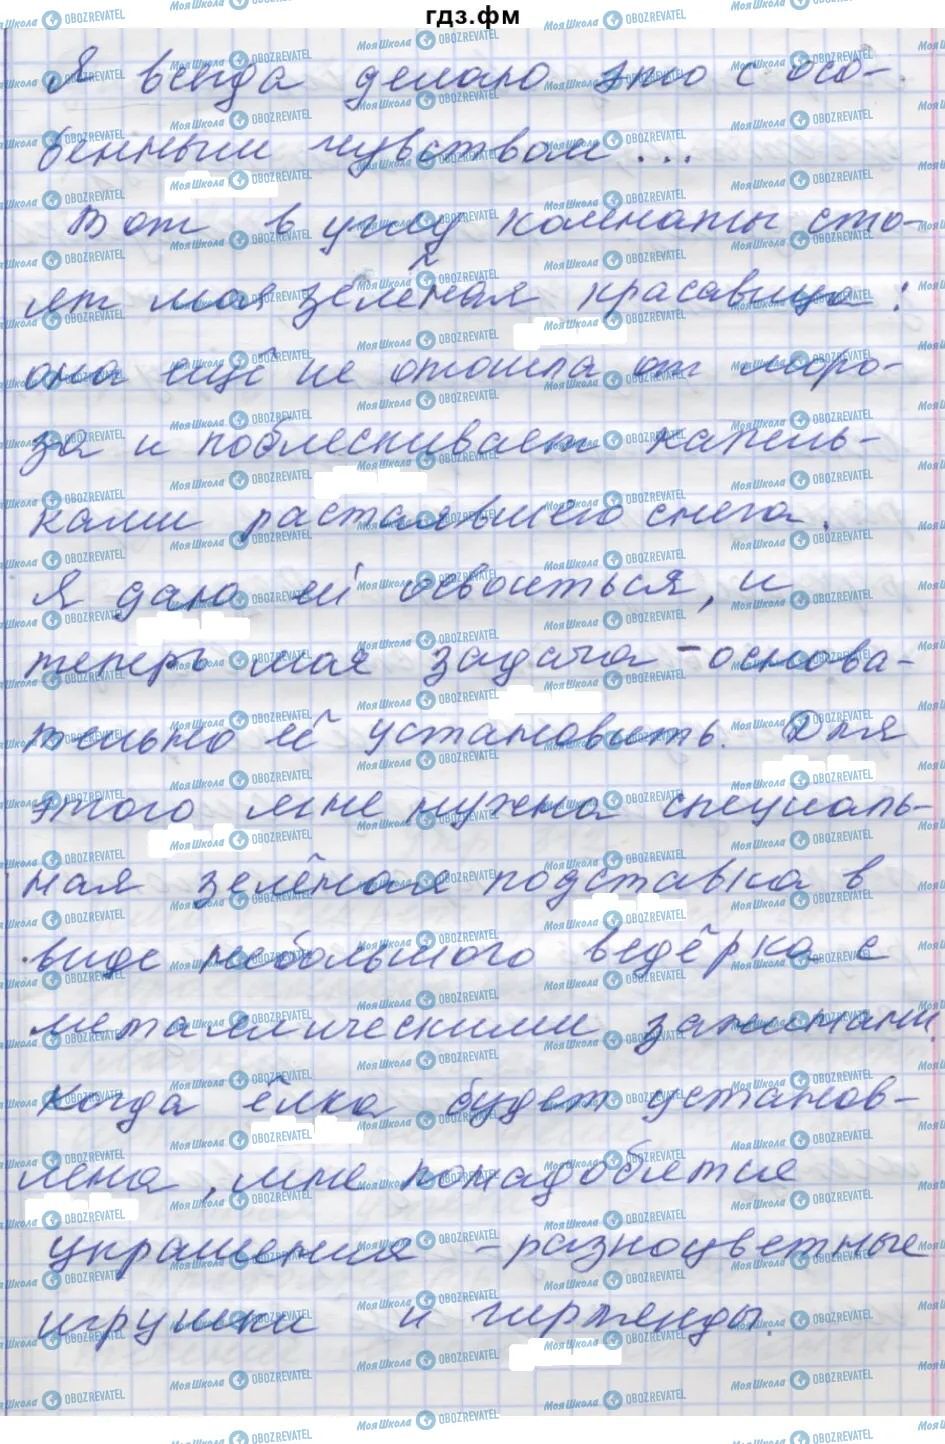 ГДЗ Російська мова 7 клас сторінка 311